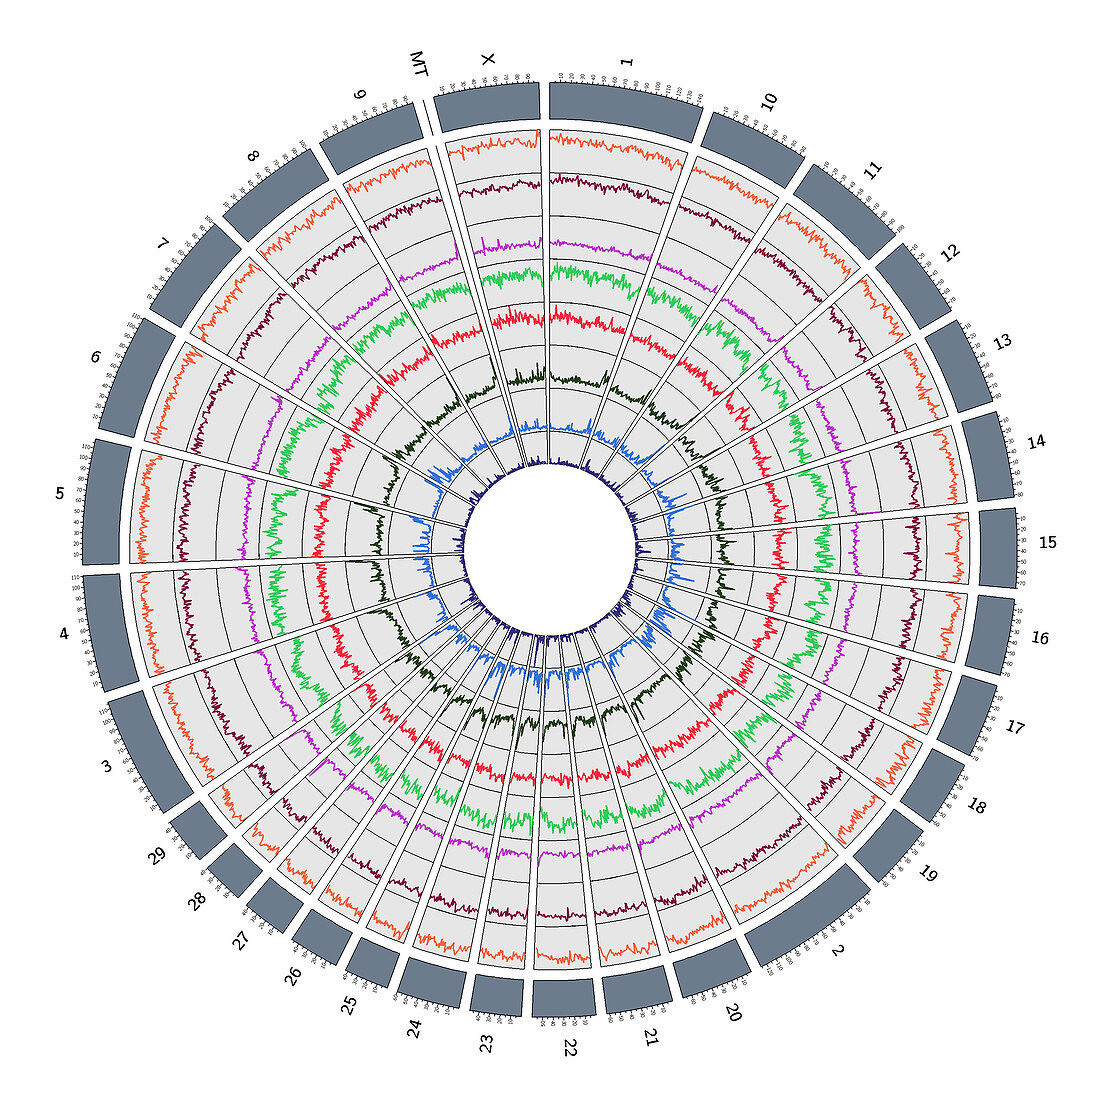 Circos, Circular Genome Map, Cow